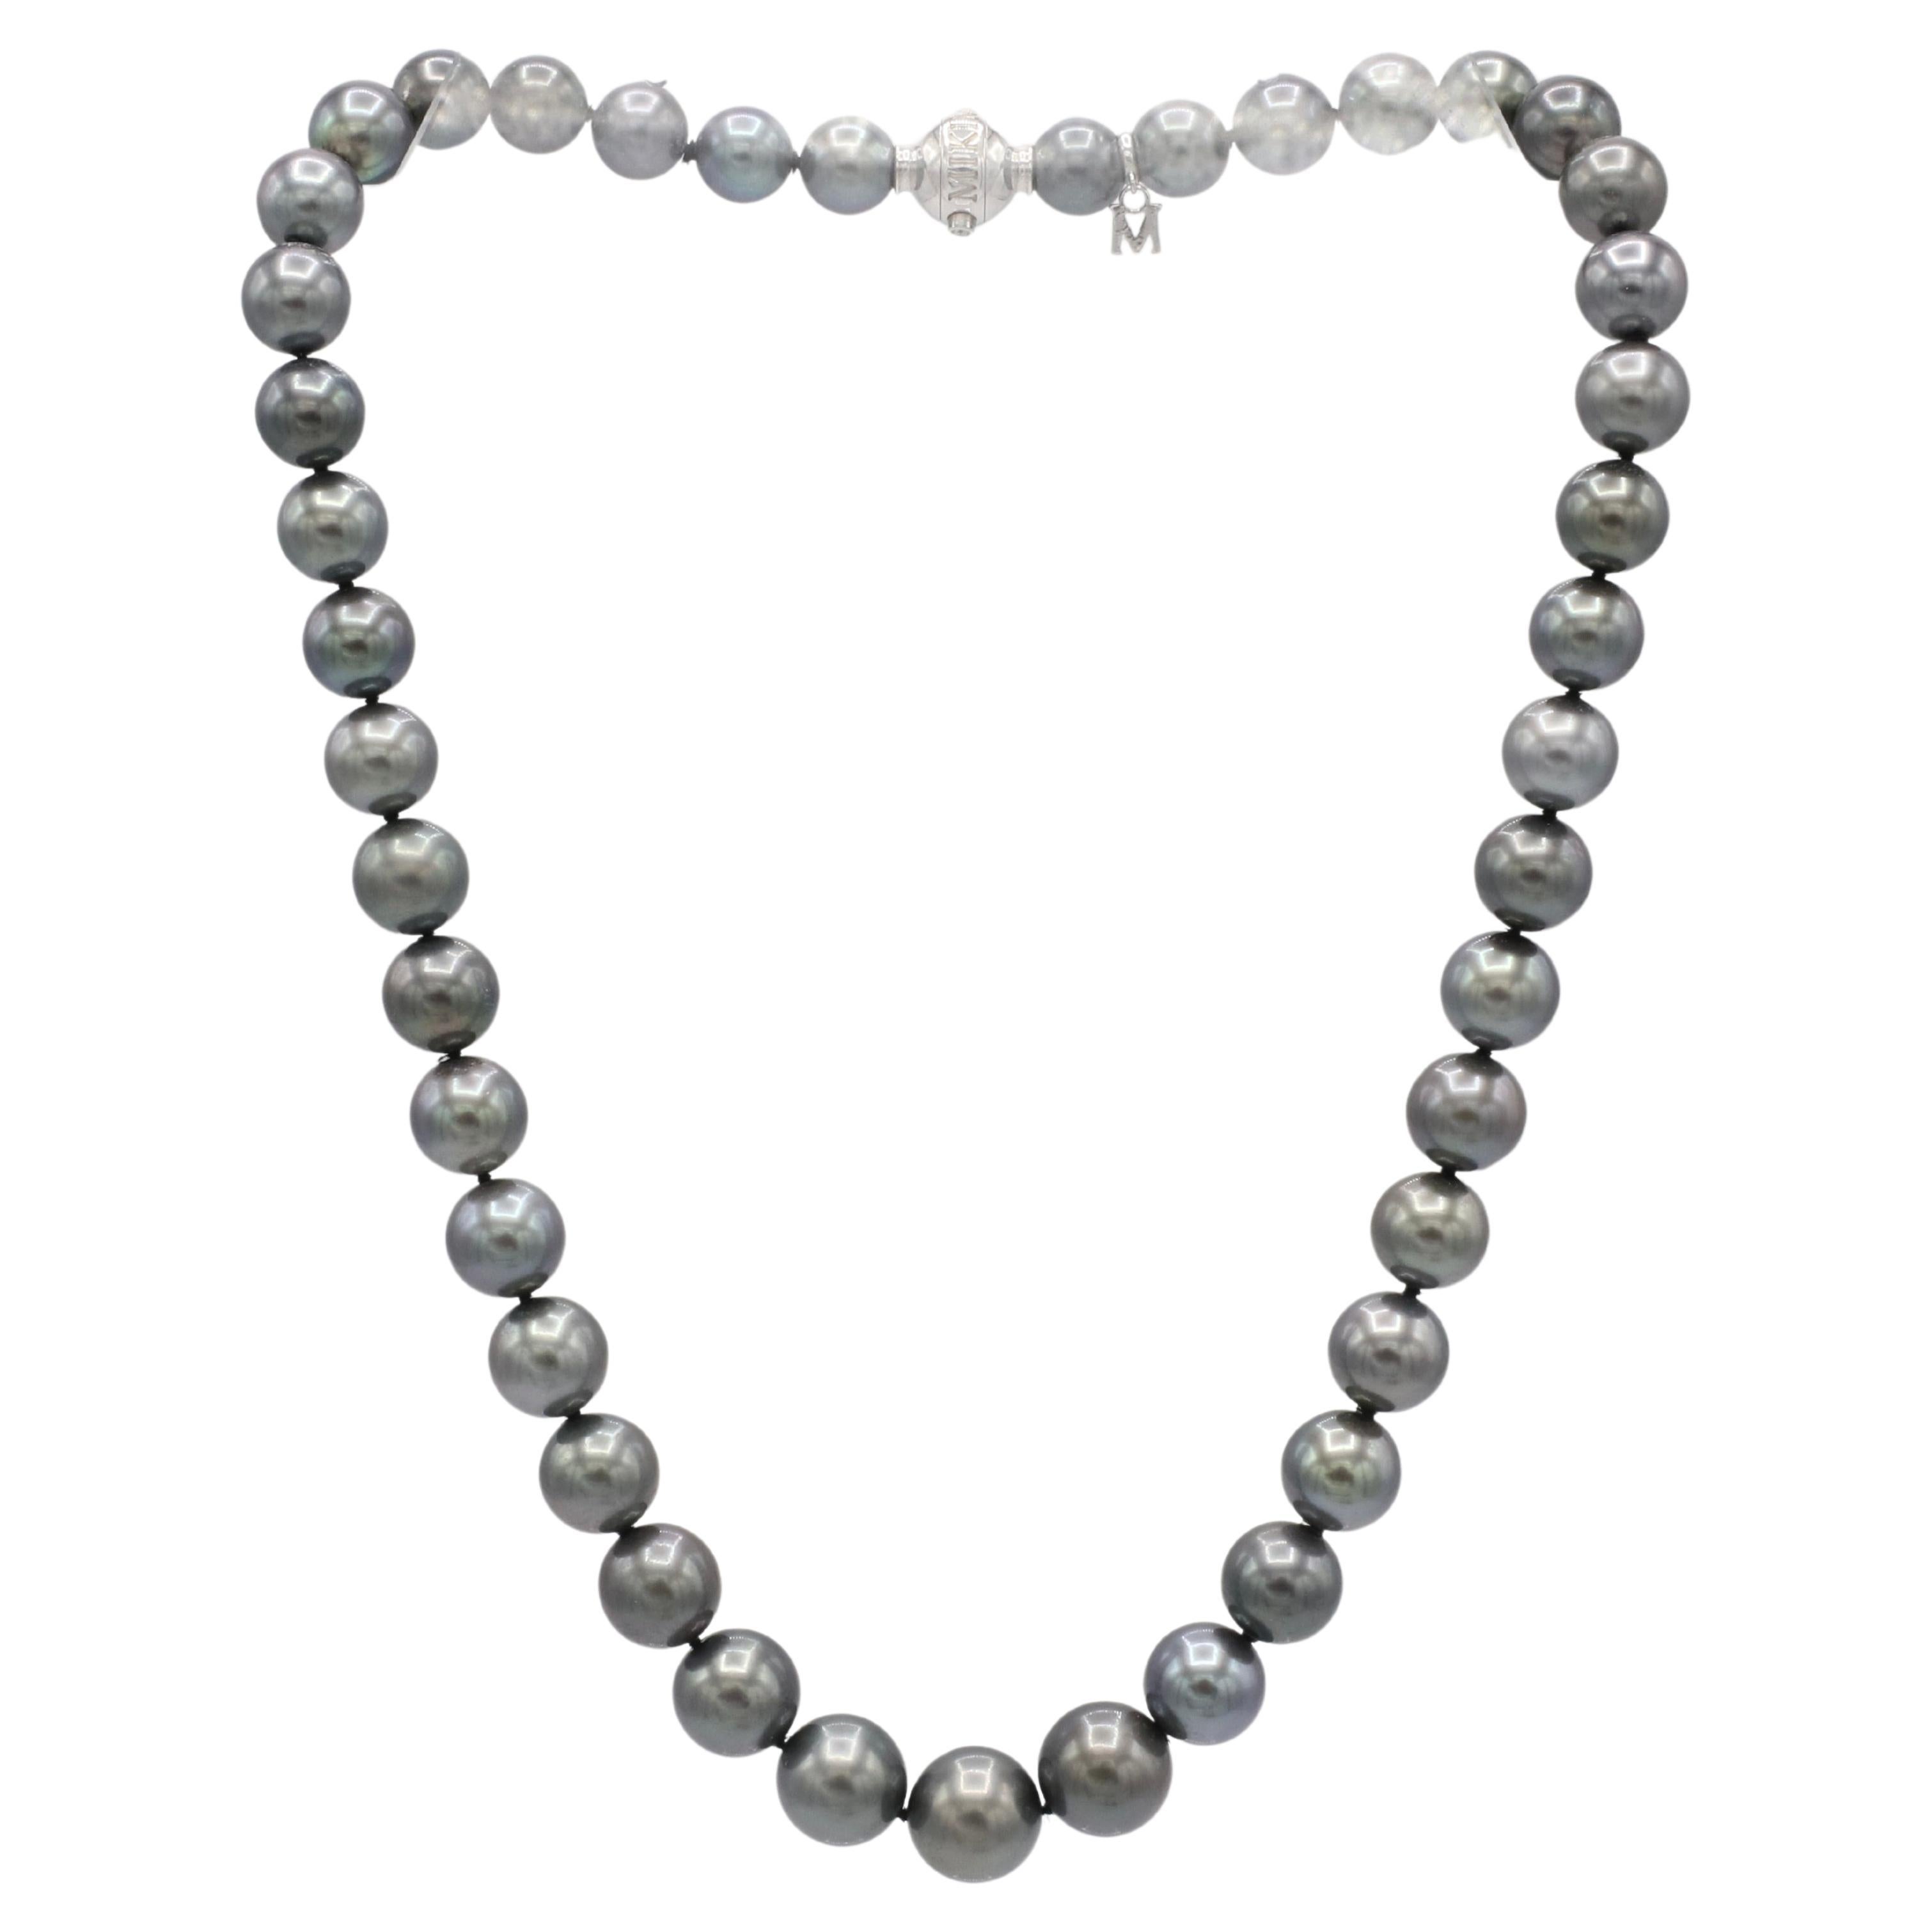 Mikimoto Black South Sea Cultured Pearl Necklace White Gold Diamond Clasp 